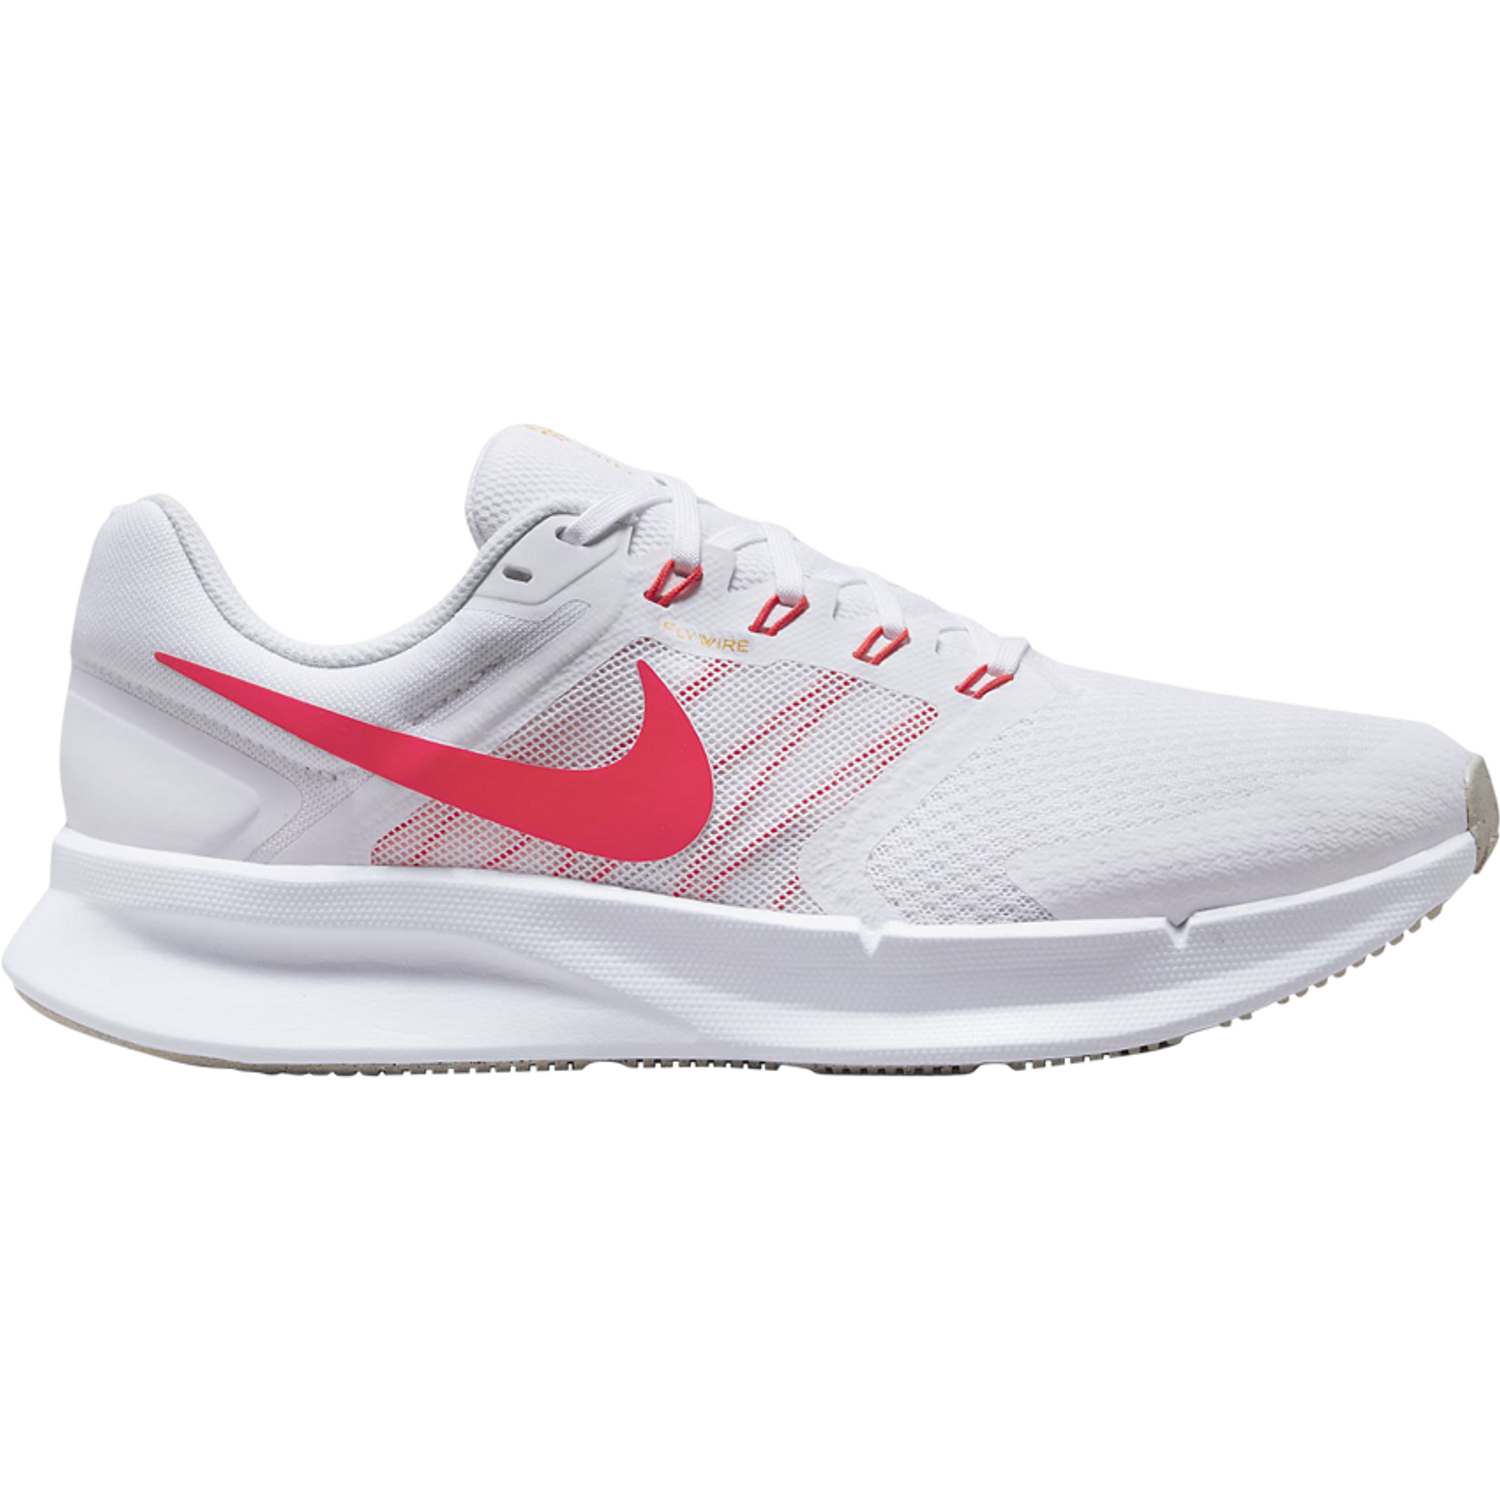 Кроссовки Nike Run Swift 3, бело-розовый